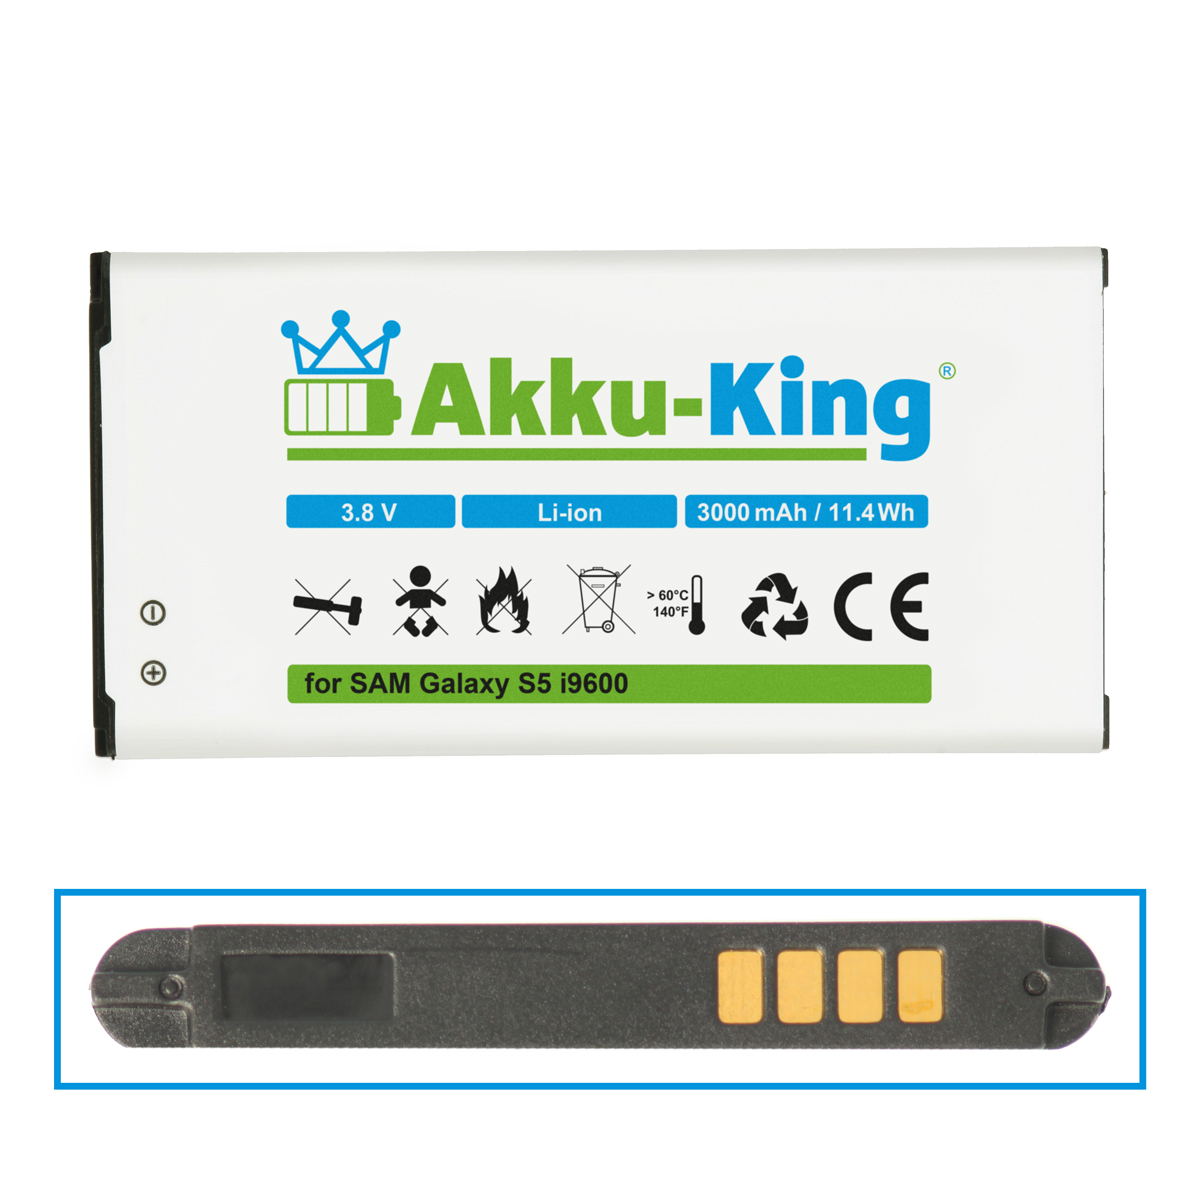 AKKU-KING Akku kompatibel mit 3000mAh Li-Ion Volt, EB-B900BE Samsung Handy-Akku, 3.8